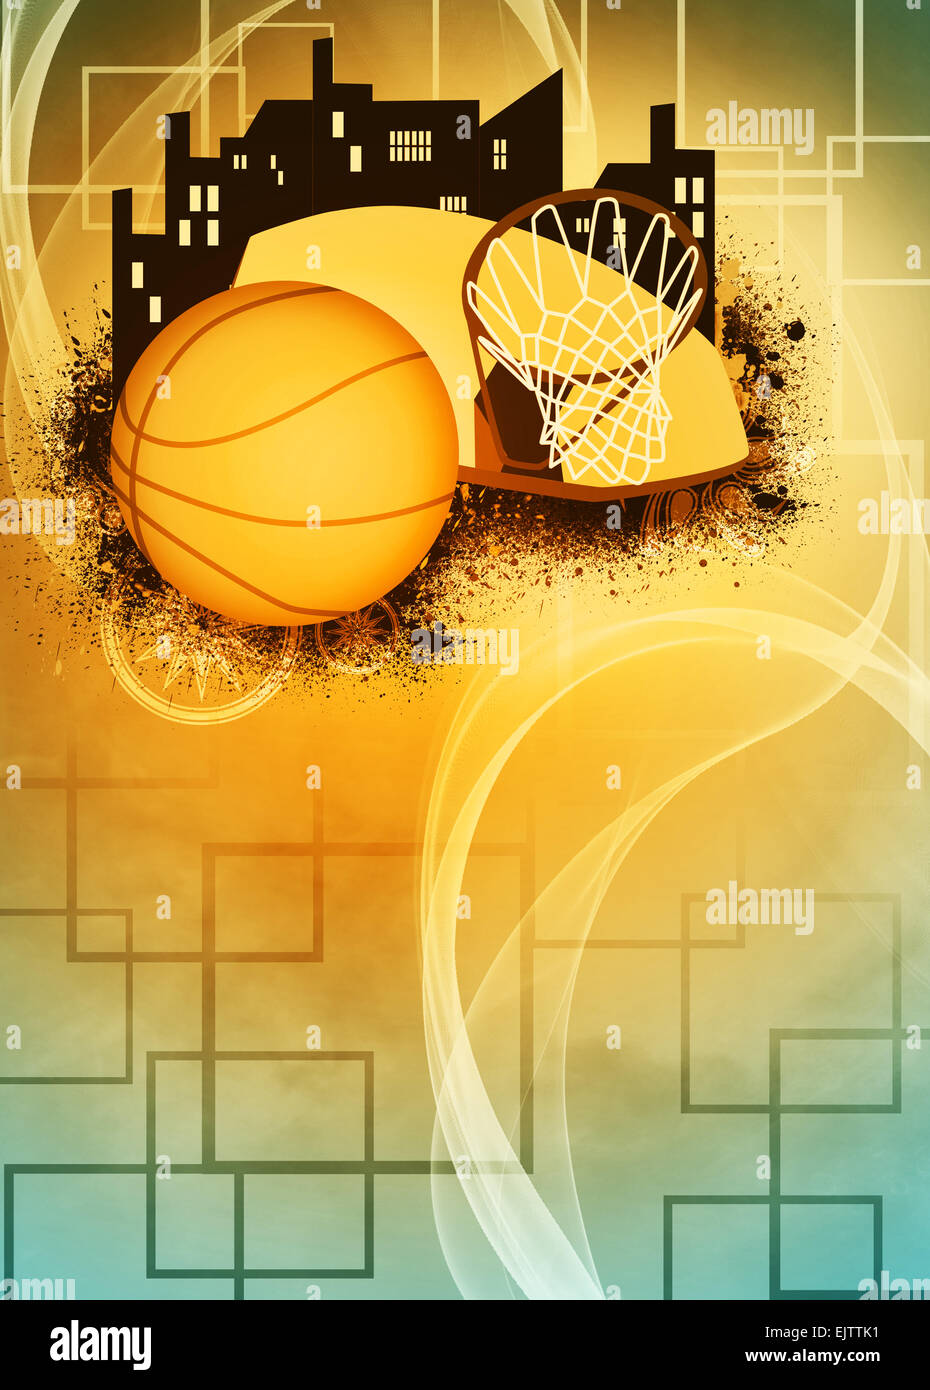 Descubrir 62+ imagen flyer de basquetbol - Abzlocal.mx